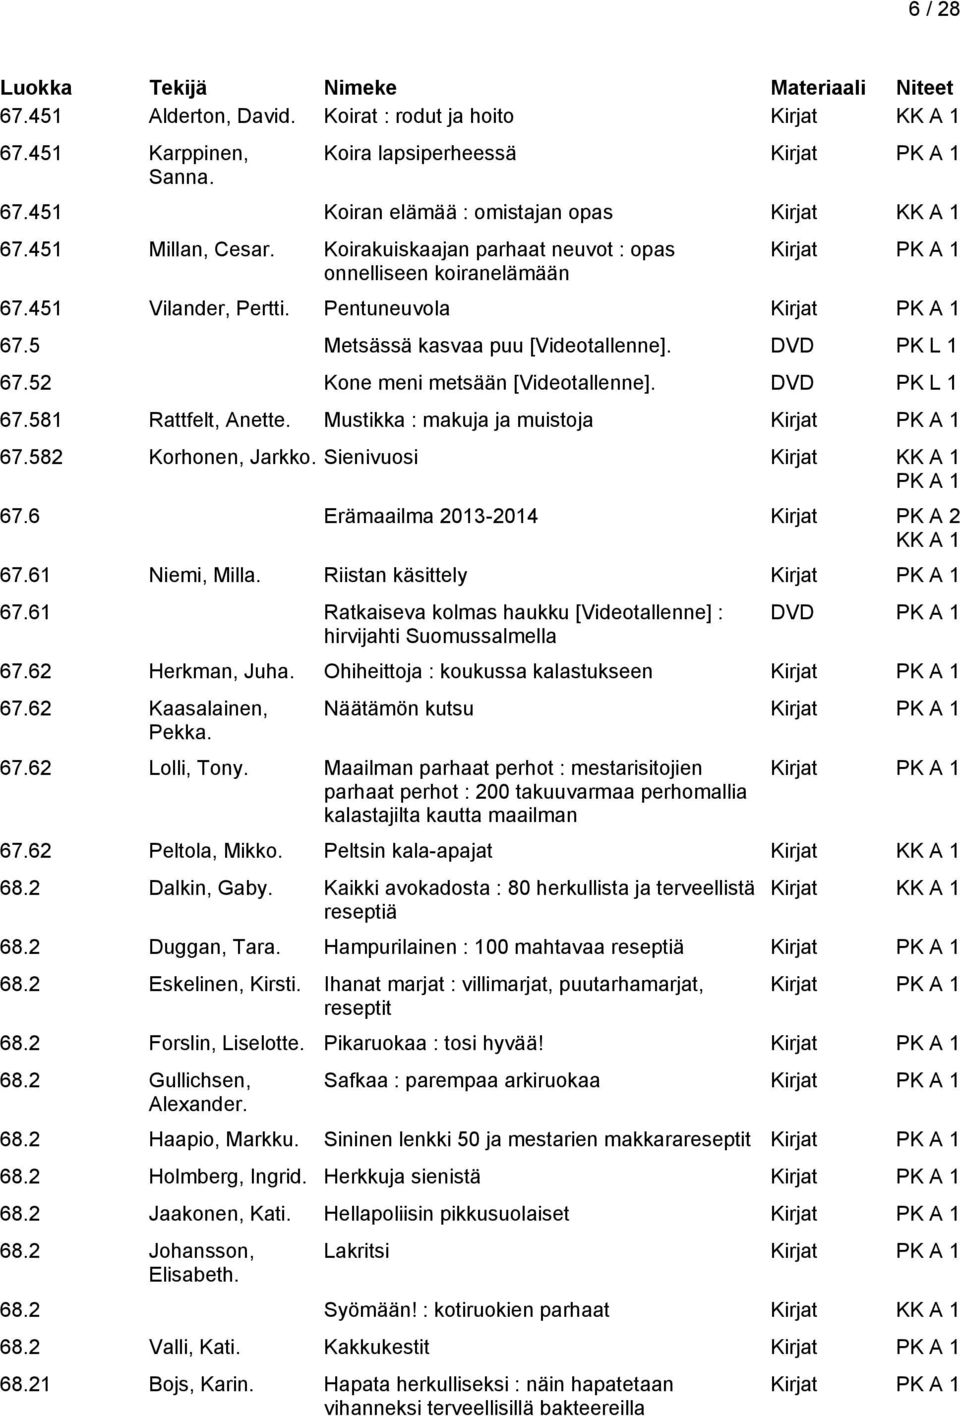 Mustikka : makuja ja muistoja 67.582 Korhonen, Jarkko. Sienivuosi Kirjat 67.6 Erämaailma 2013-2014 Kirjat PK A 2 67.61 Niemi, Milla. Riistan käsittely 67.